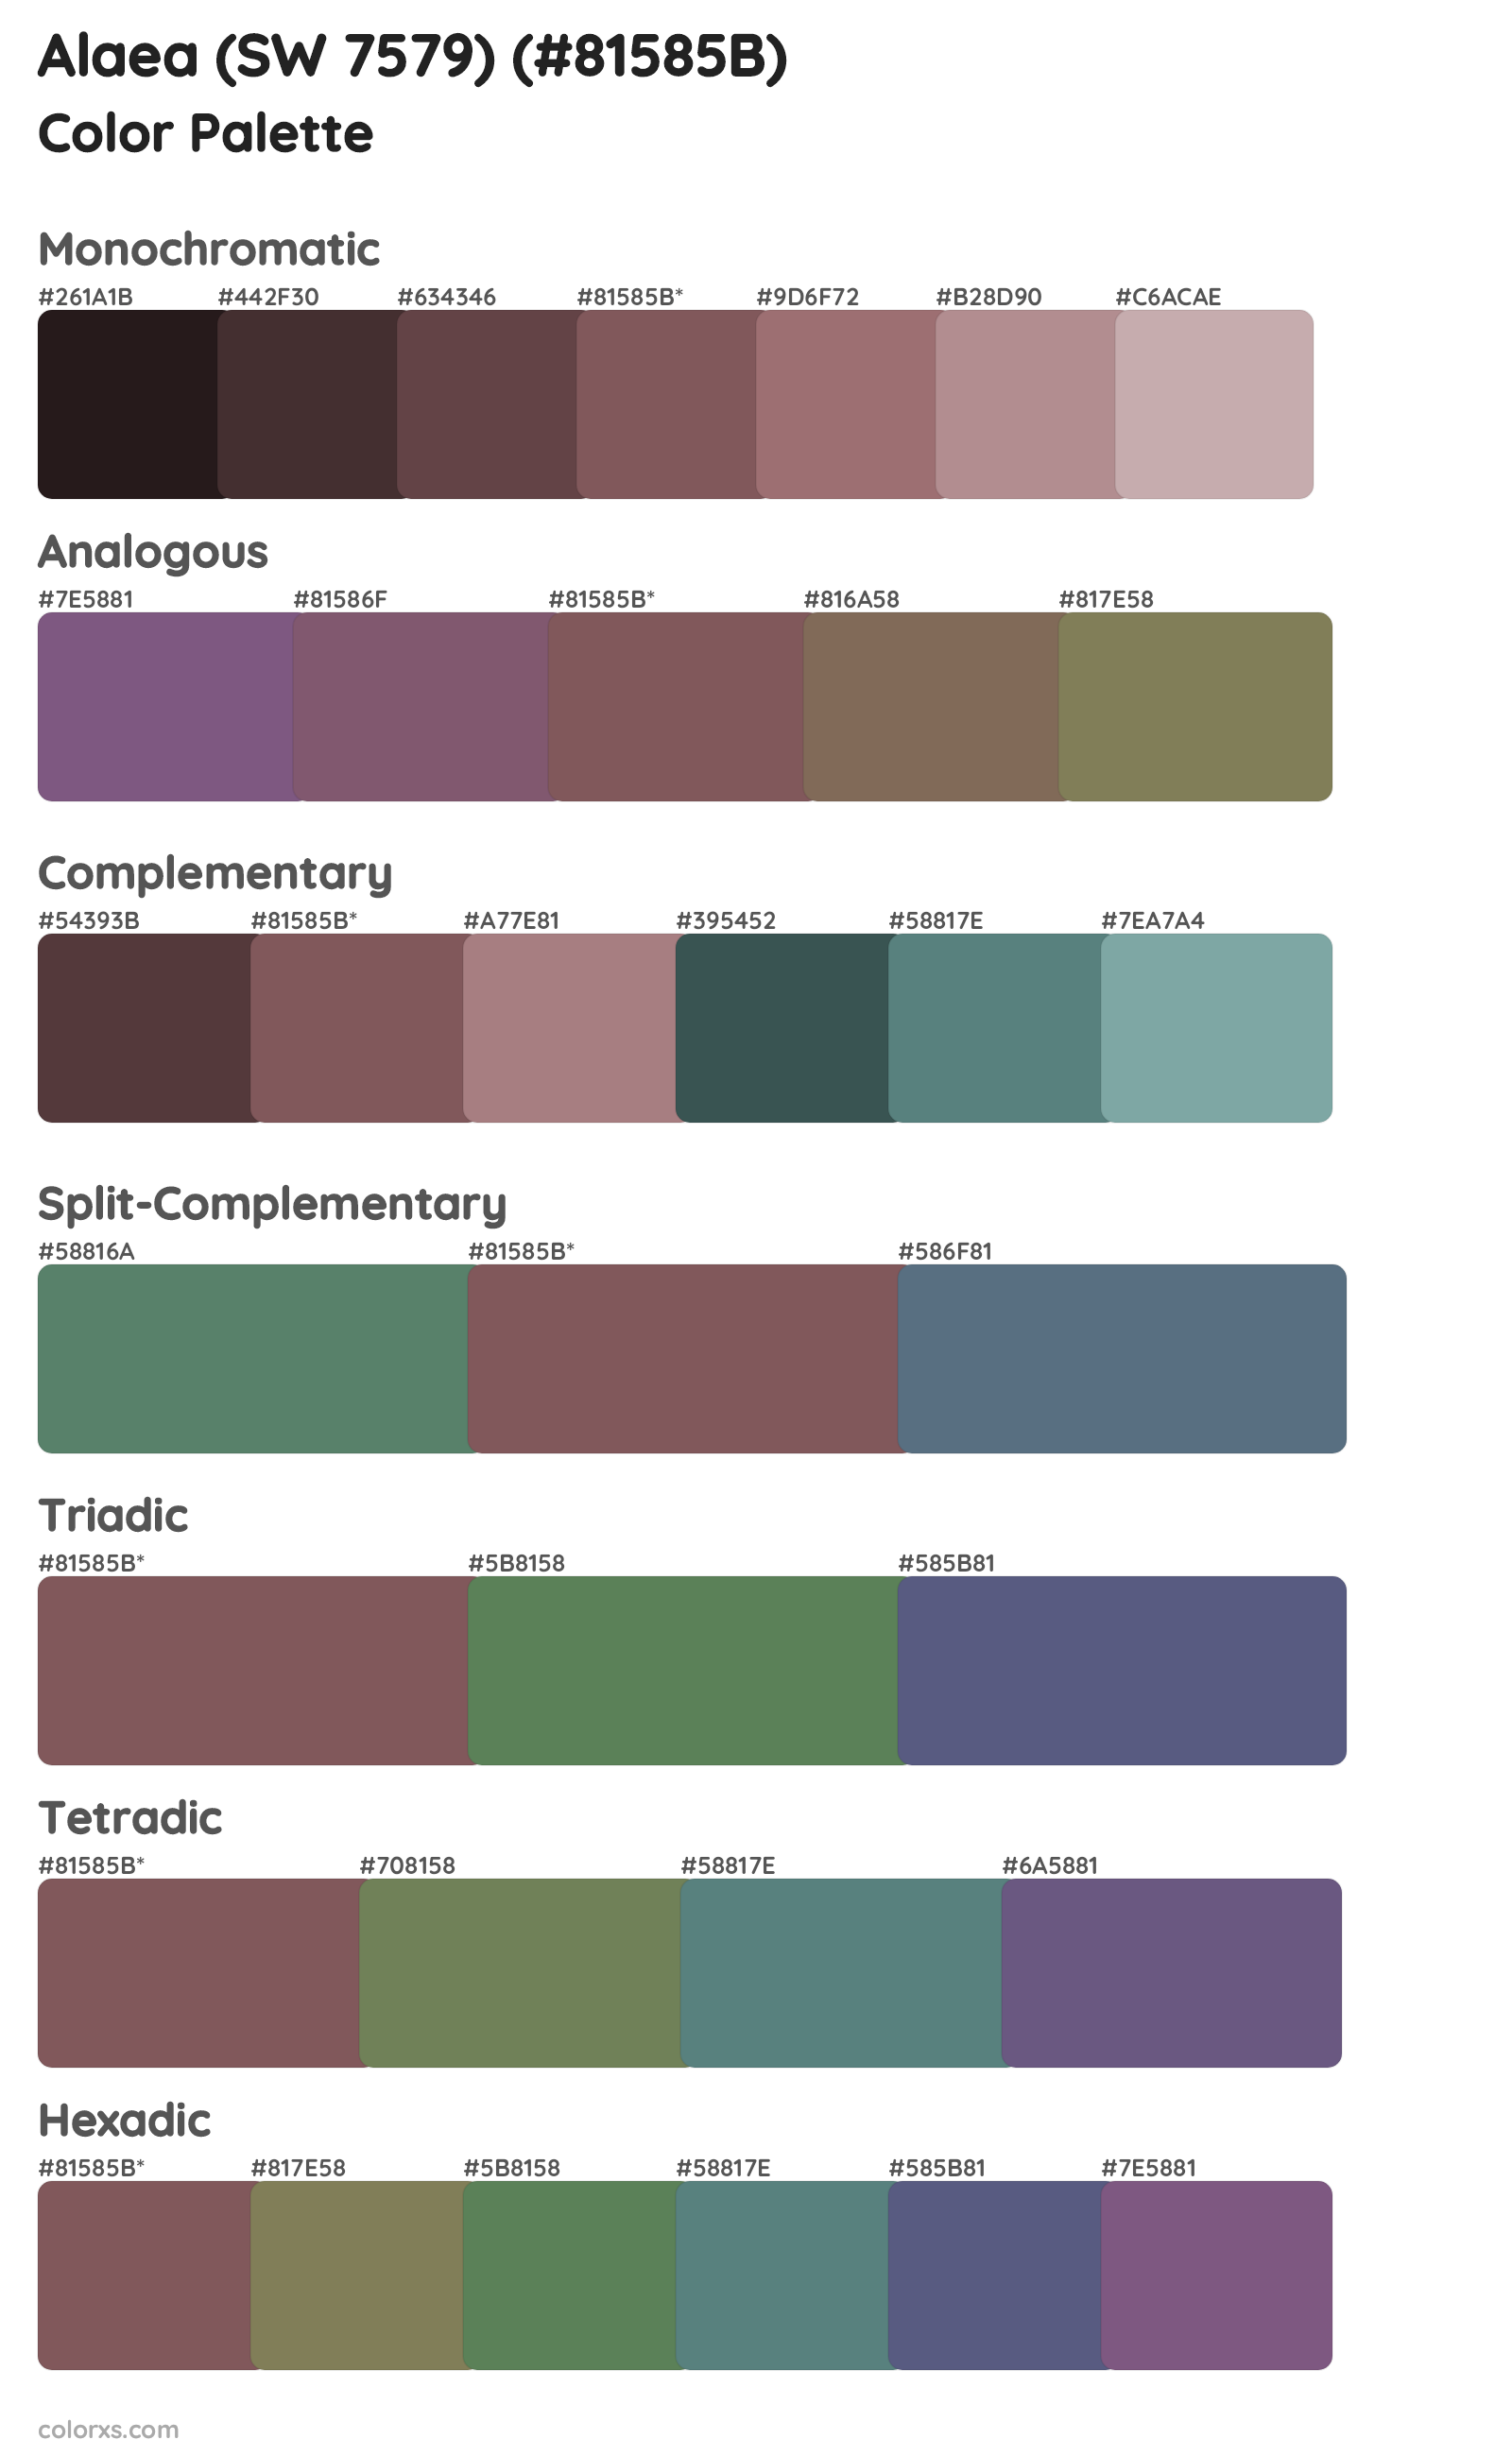 Alaea (SW 7579) Color Scheme Palettes